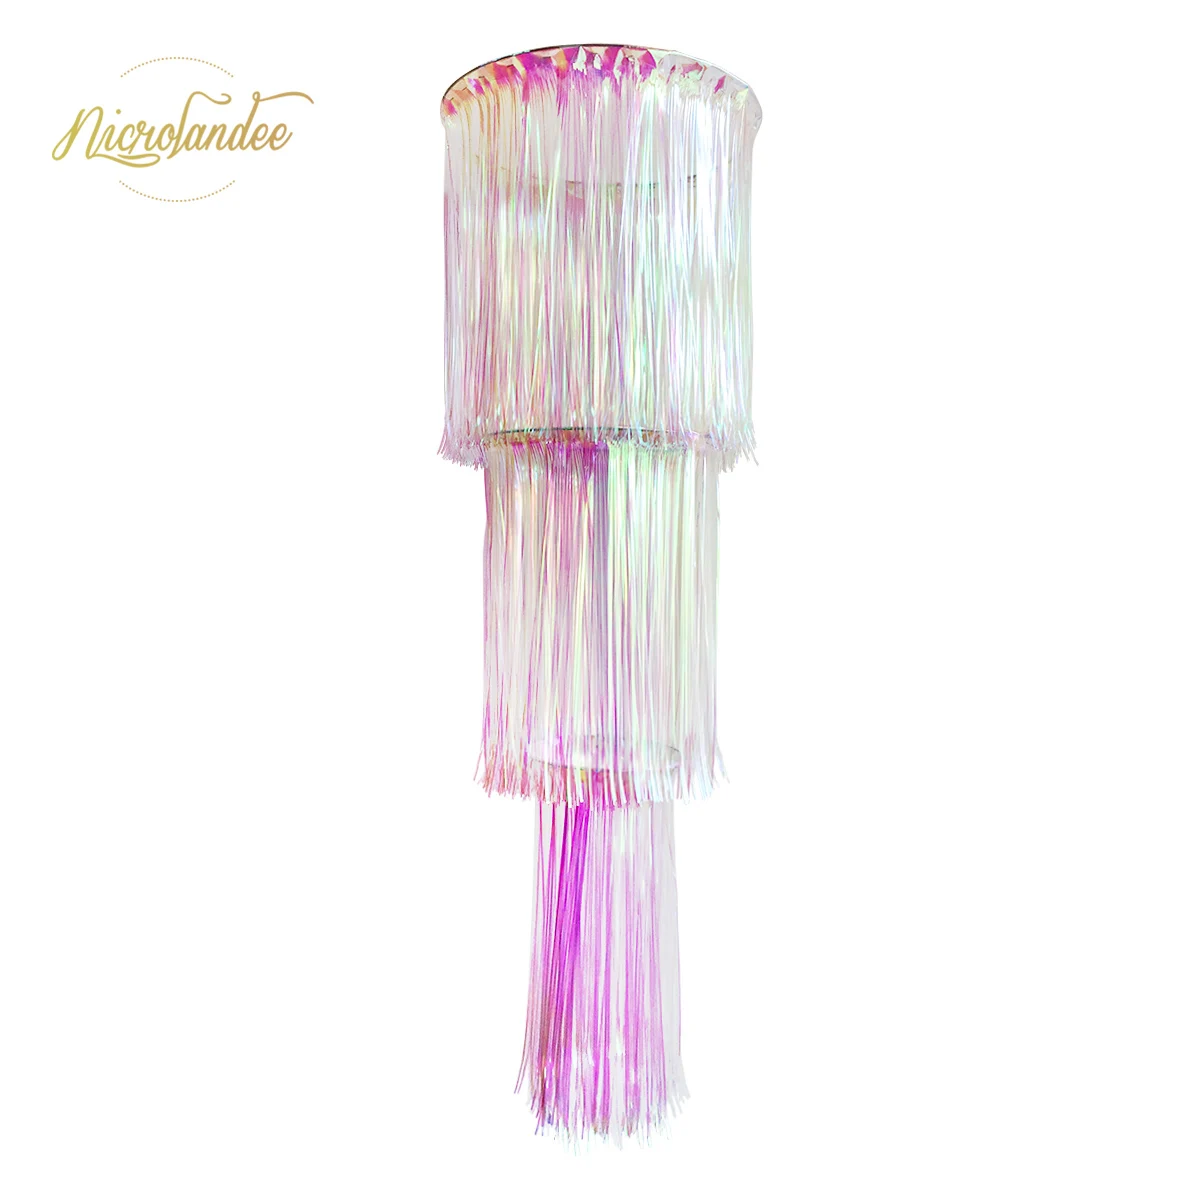 NICROLANDEE 3-capa Iridiscente arco iris de papel de Aluminio lámpara de Araña Cortina de Lluvia Colgante Impresionante Baile de Decoración de la Decoración del Partido 5